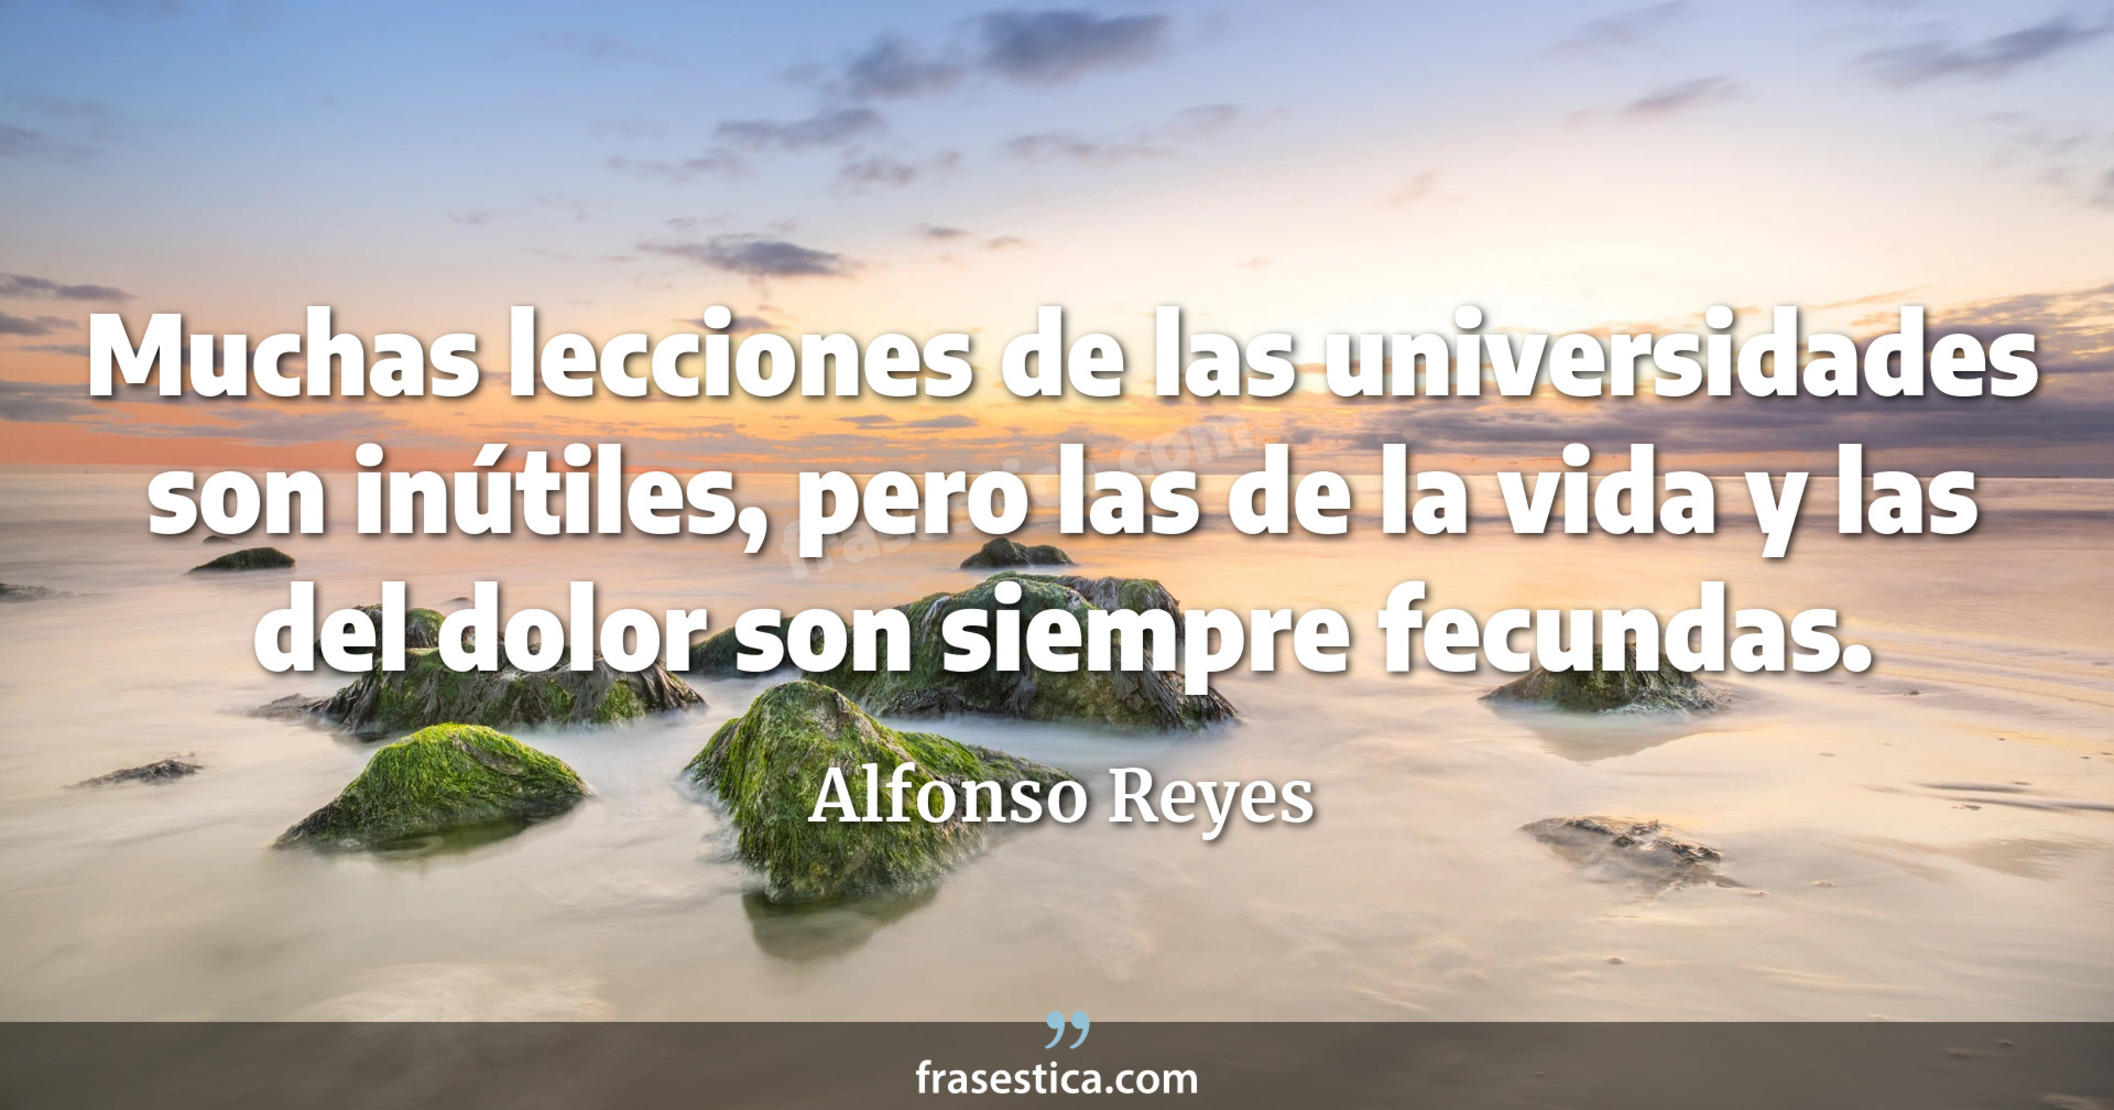 Muchas lecciones de las universidades son inútiles, pero las de la vida y las del dolor son siempre fecundas. - Alfonso Reyes